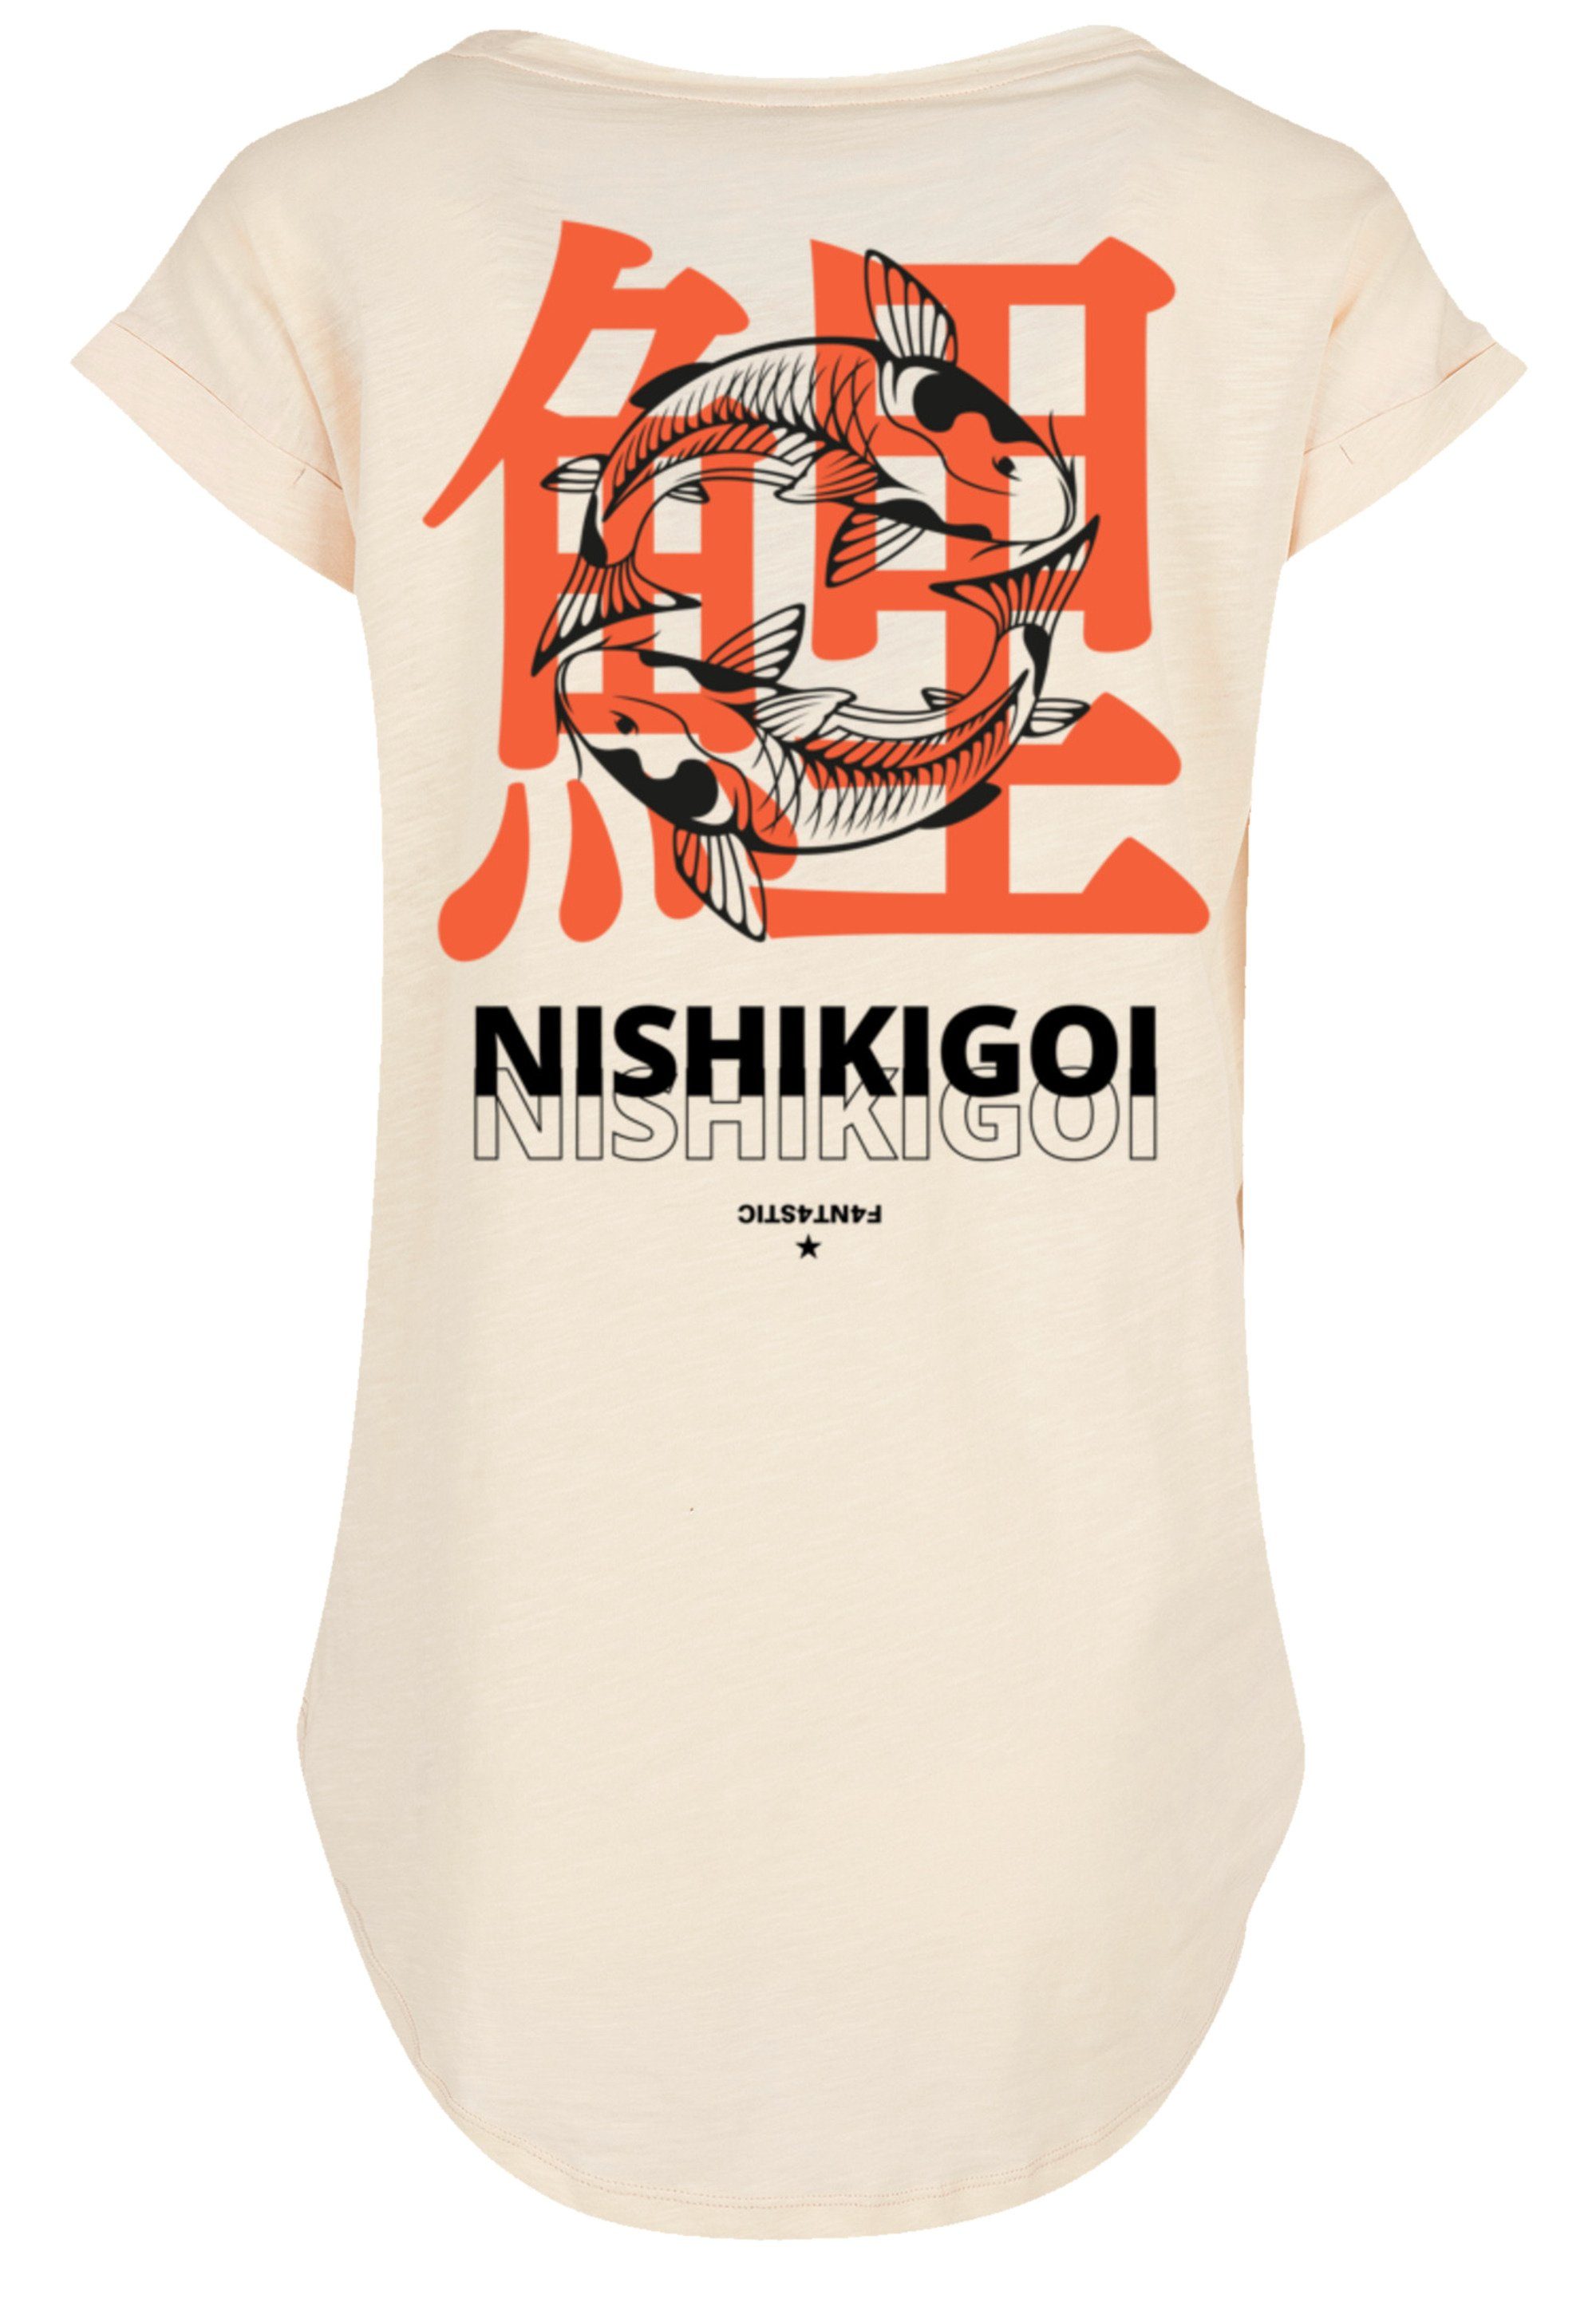 hohem Nishikigoi Print, Koi mit Baumwollstoff Japan Tragekomfort F4NT4STIC Grafik Sehr weicher T-Shirt